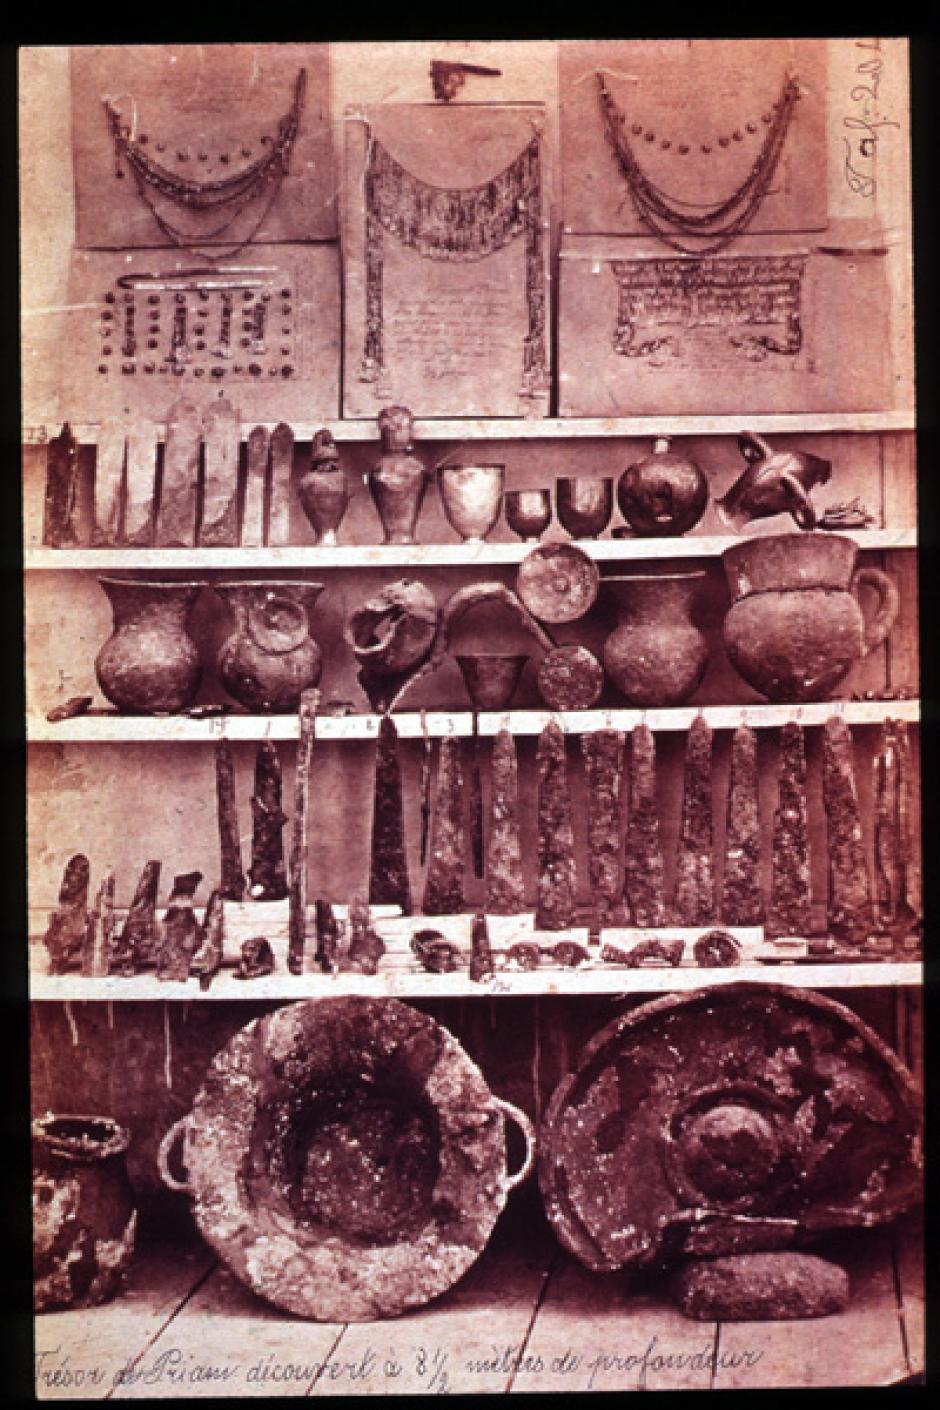 Parte del tesoro de Príamo. Foto tomada hacia 1880